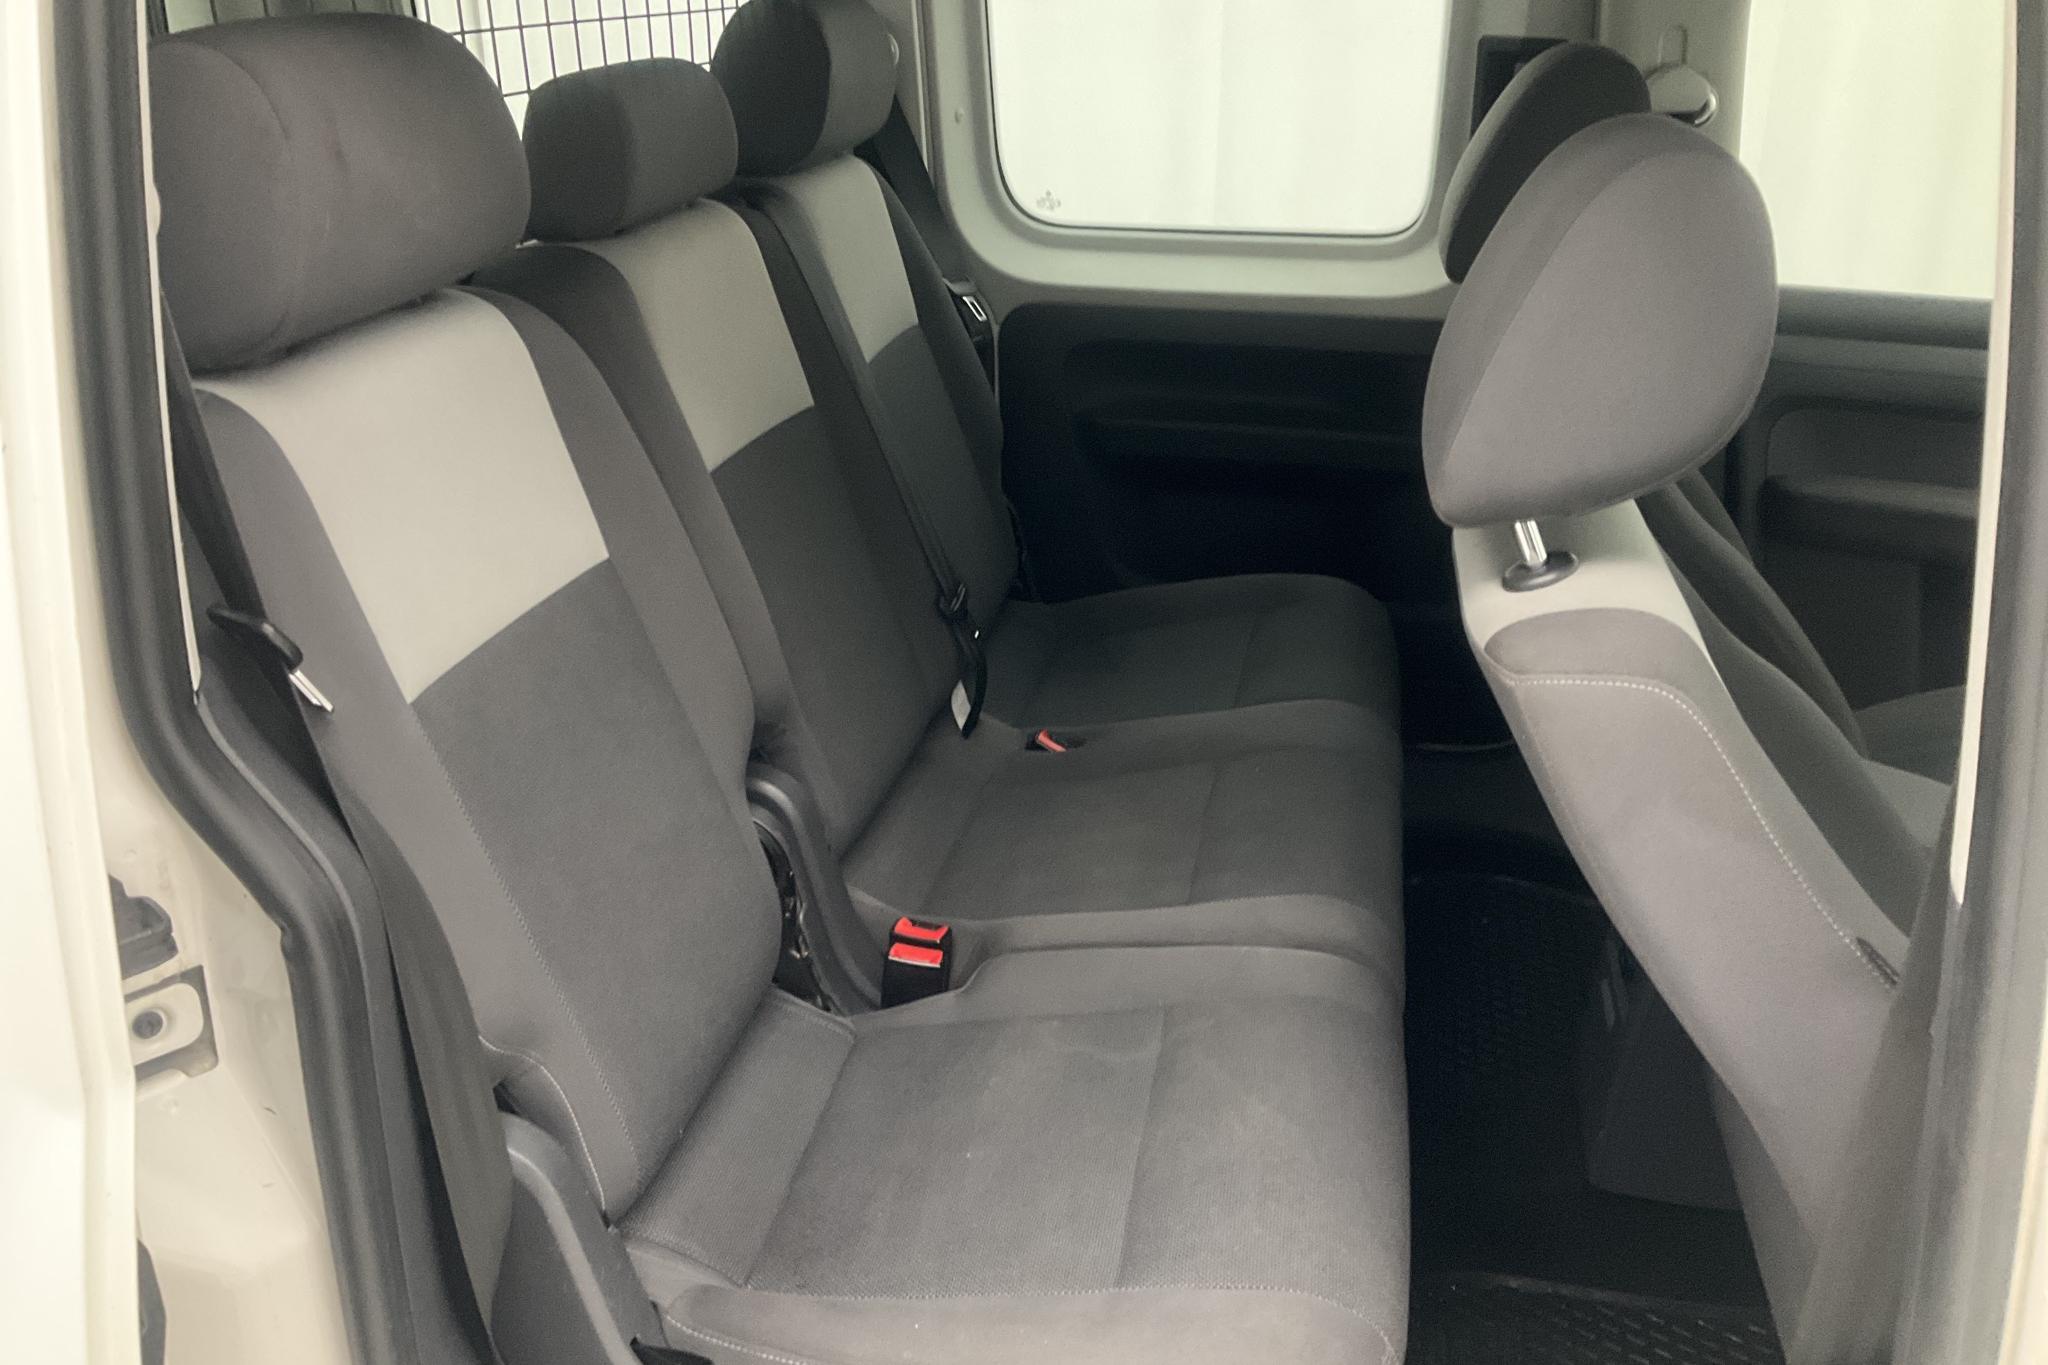 VW Caddy MPV 1.6 TDI (102hk) - 8 059 mil - Manuell - vit - 2014